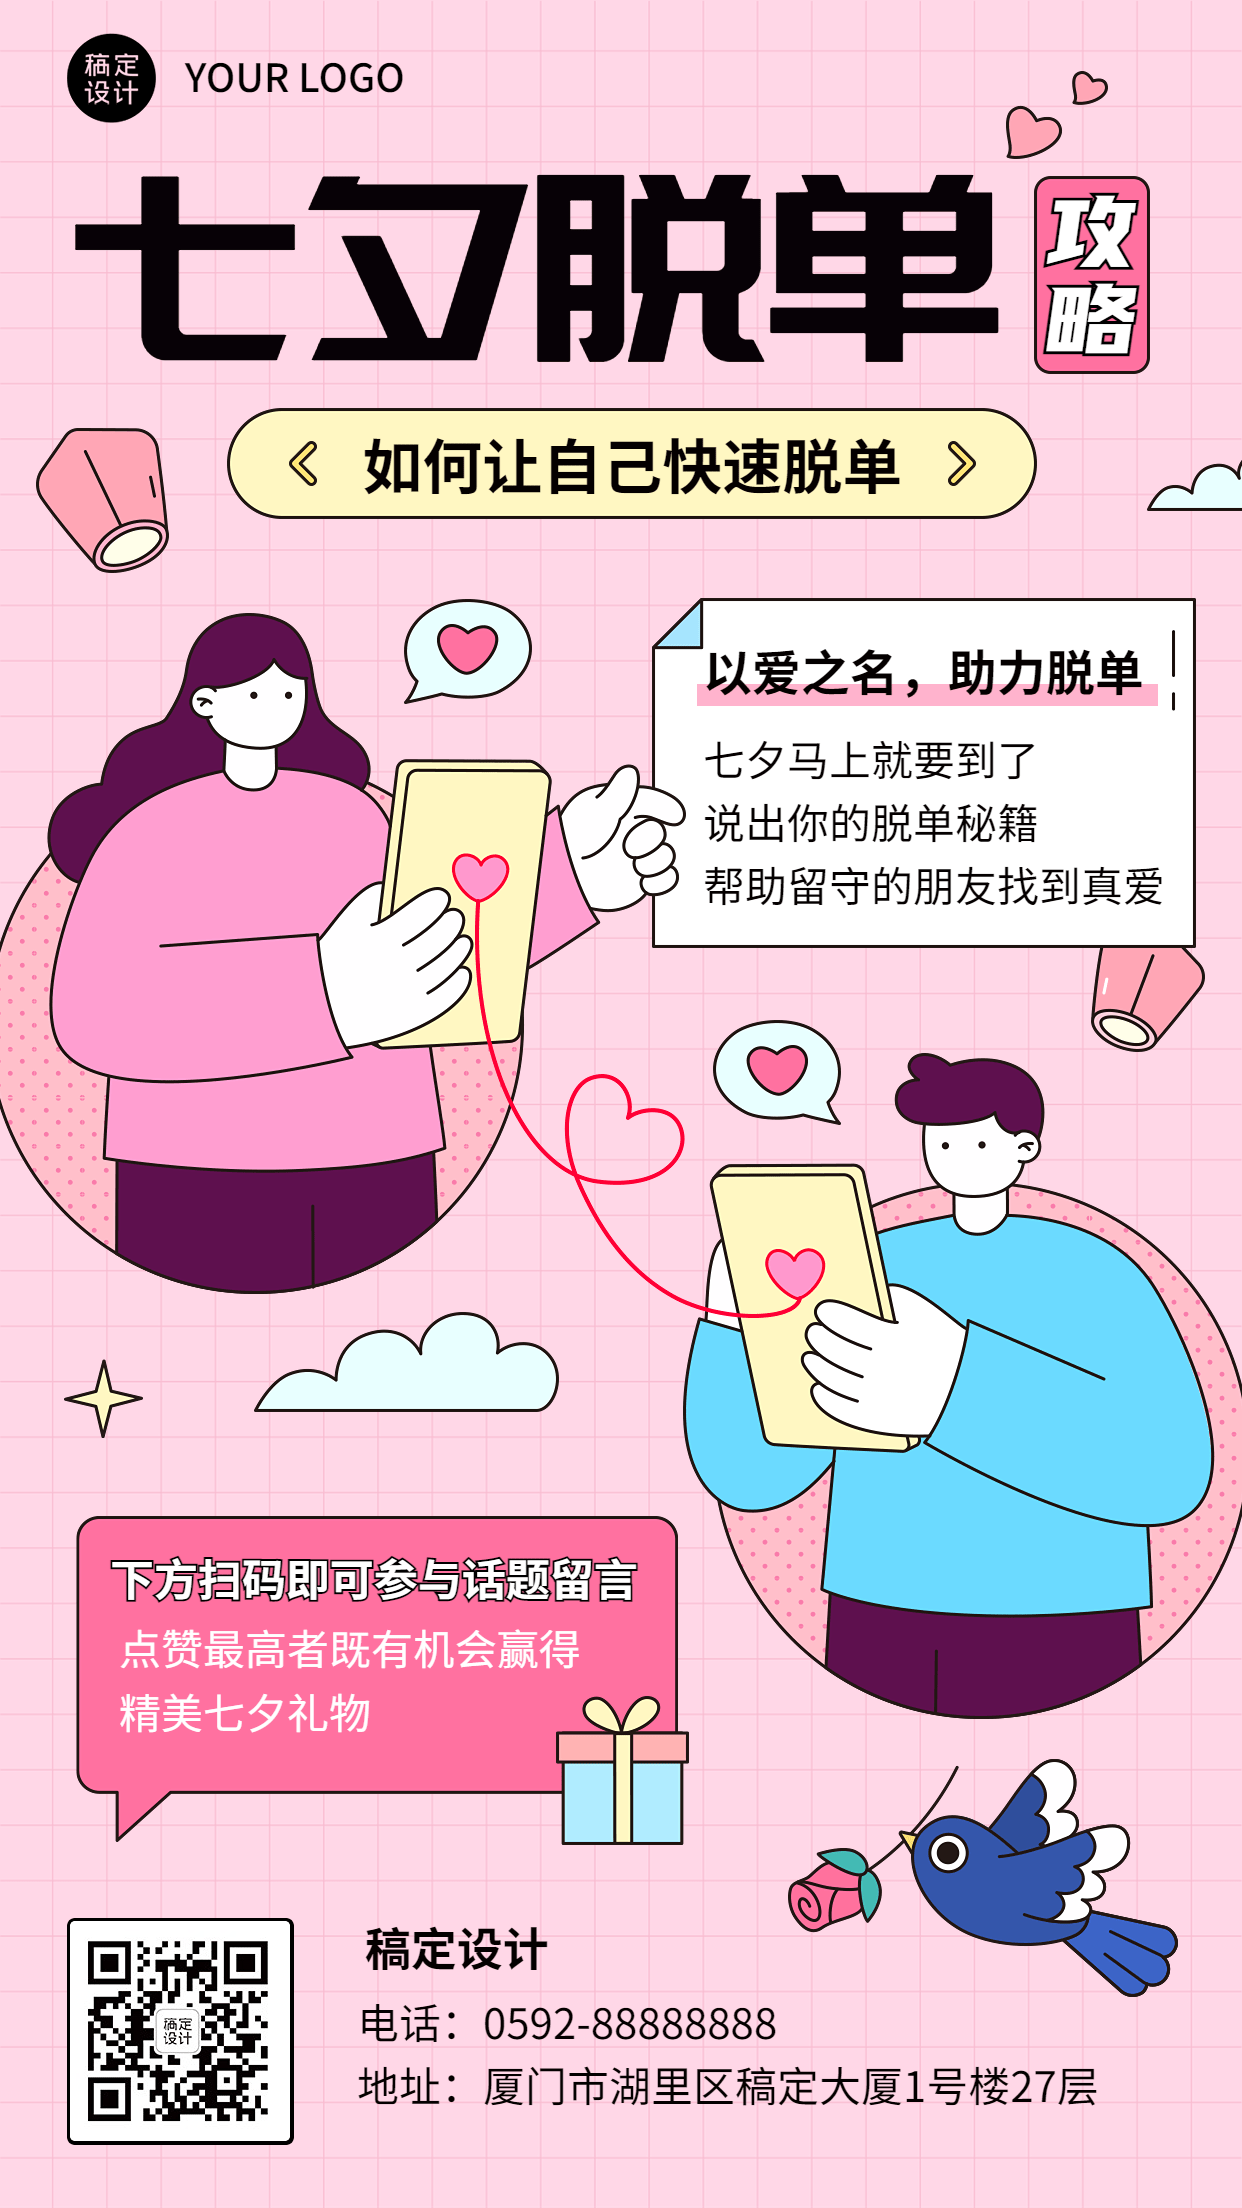 七夕情人节节日脱单攻略插画手机海报预览效果